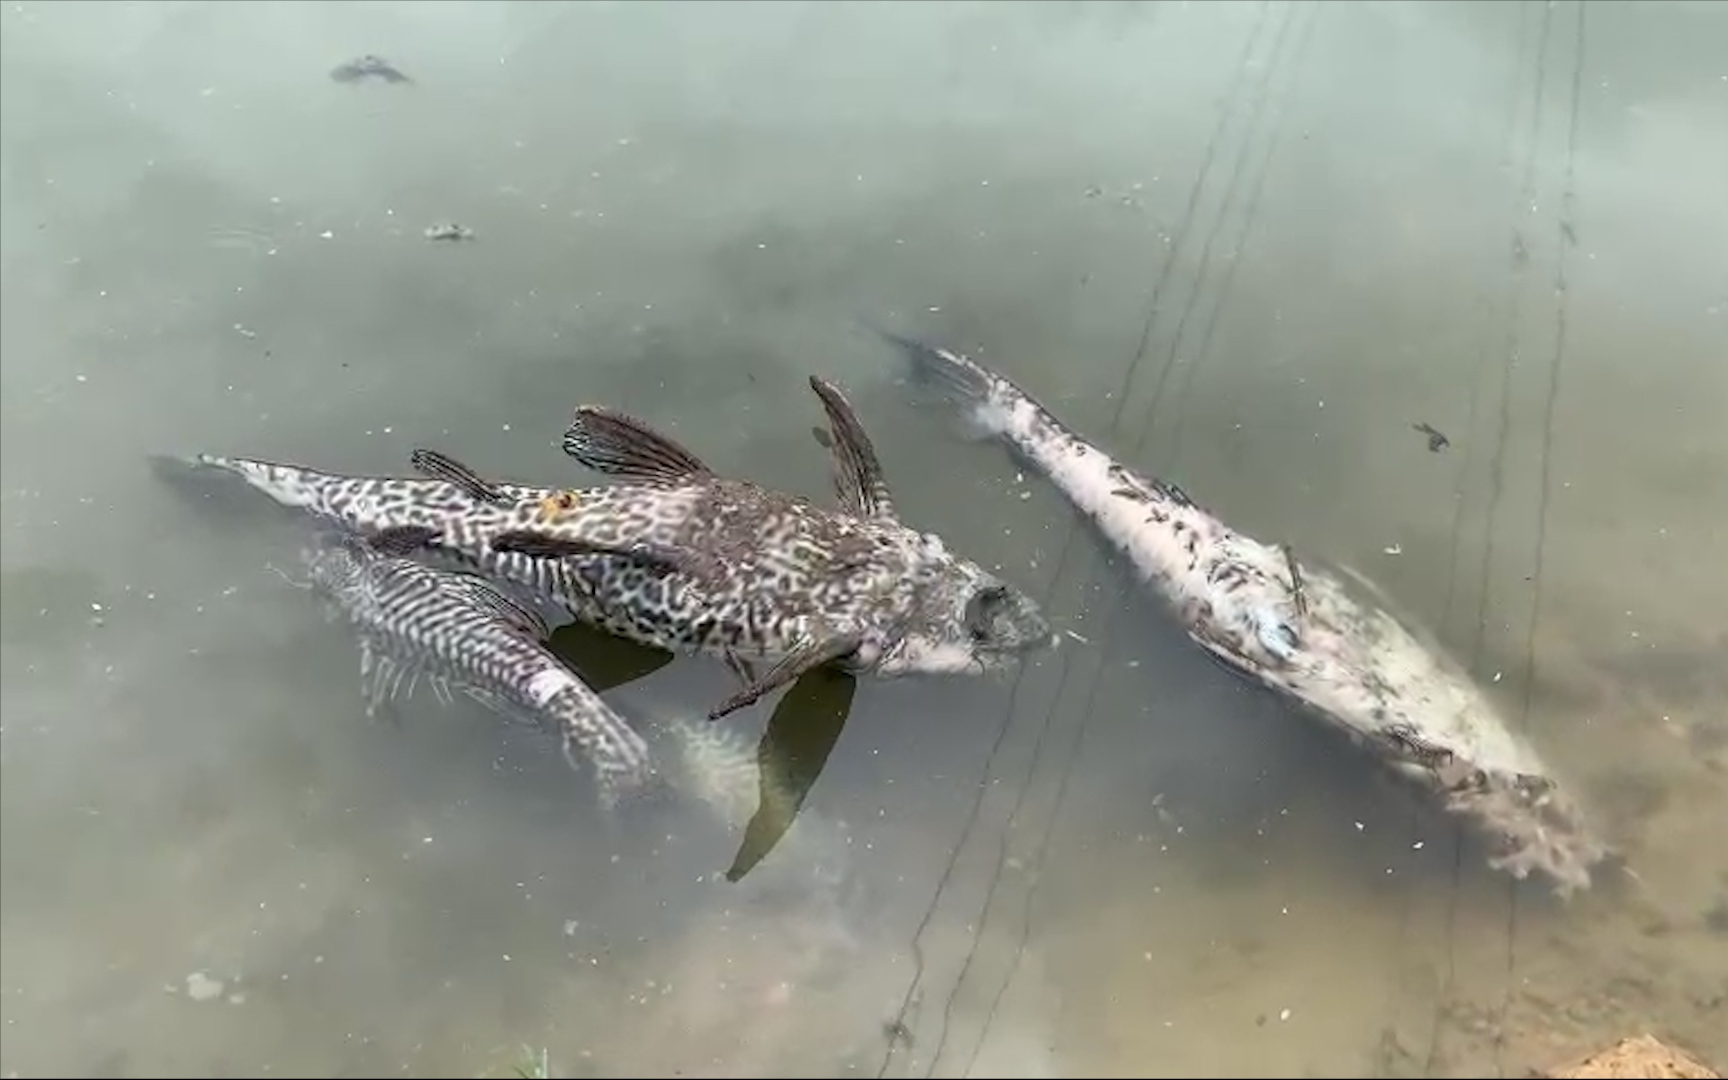 Quảng Ngãi: Cá trên sông Bàu Giang chết hàng loạt, bốc mùi hôi thối vì ô nhiễm nguồn nước